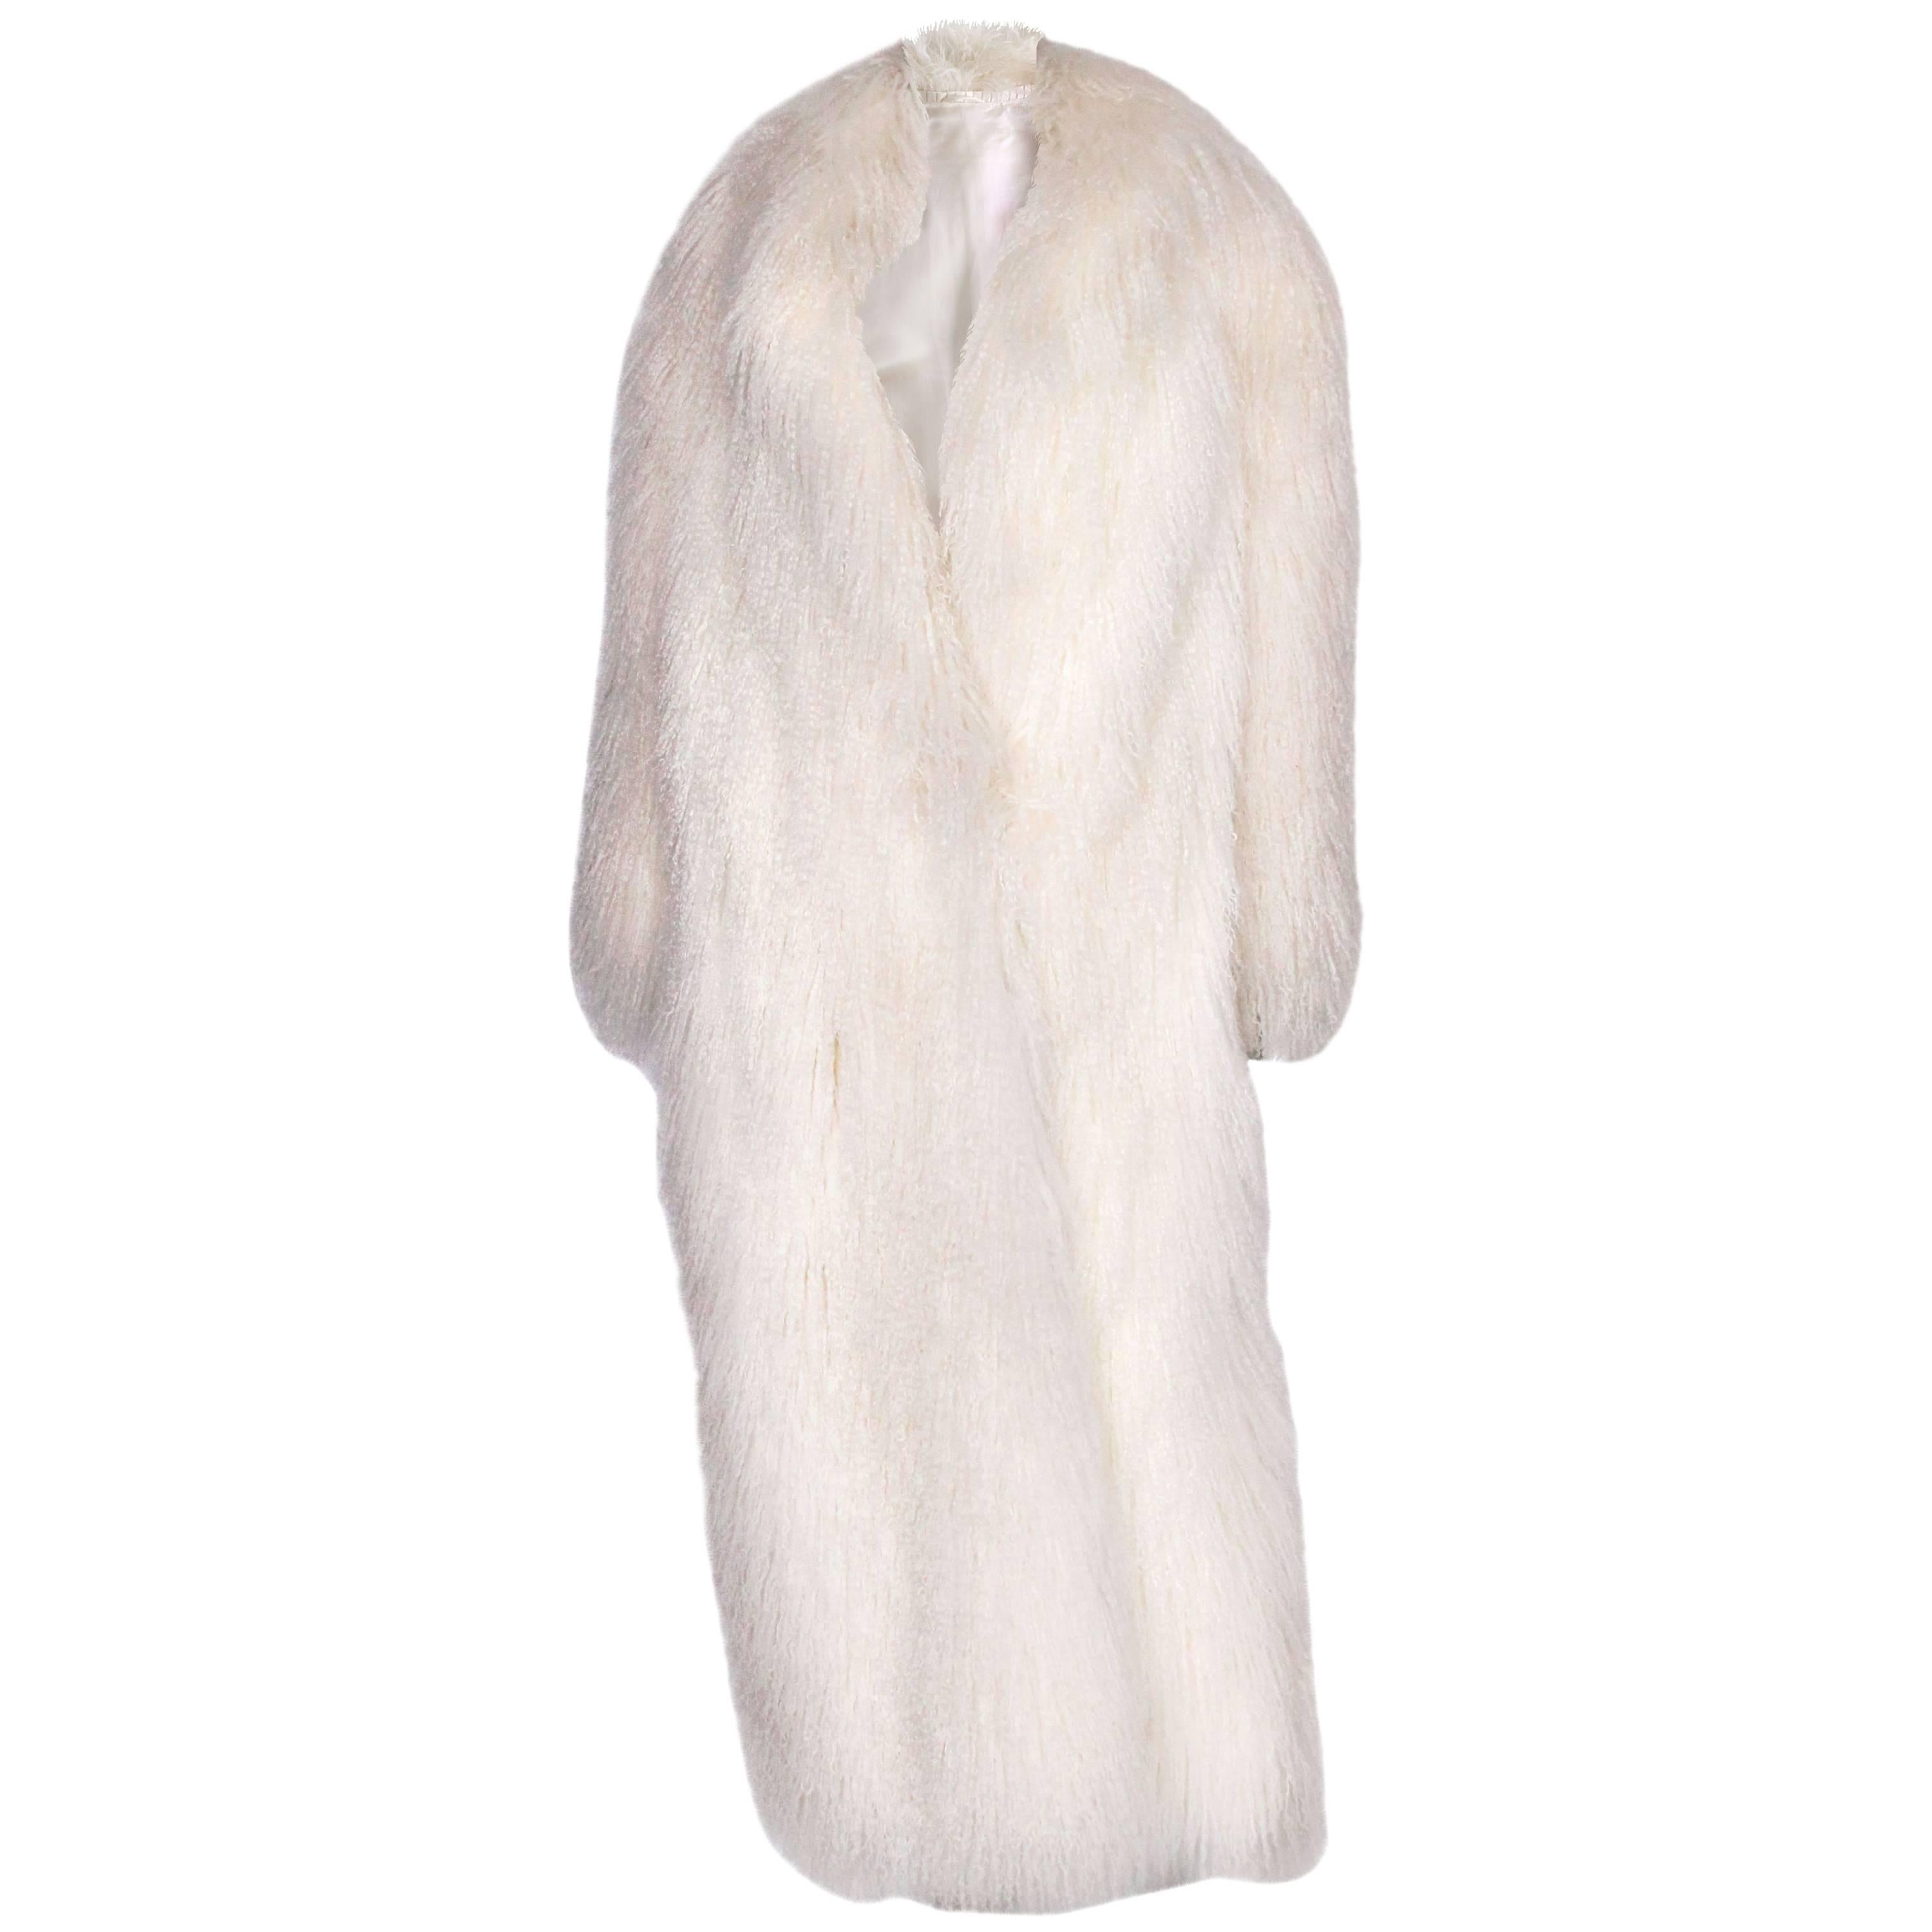 1970s/80s White Mongolian Lamb Fur Coat